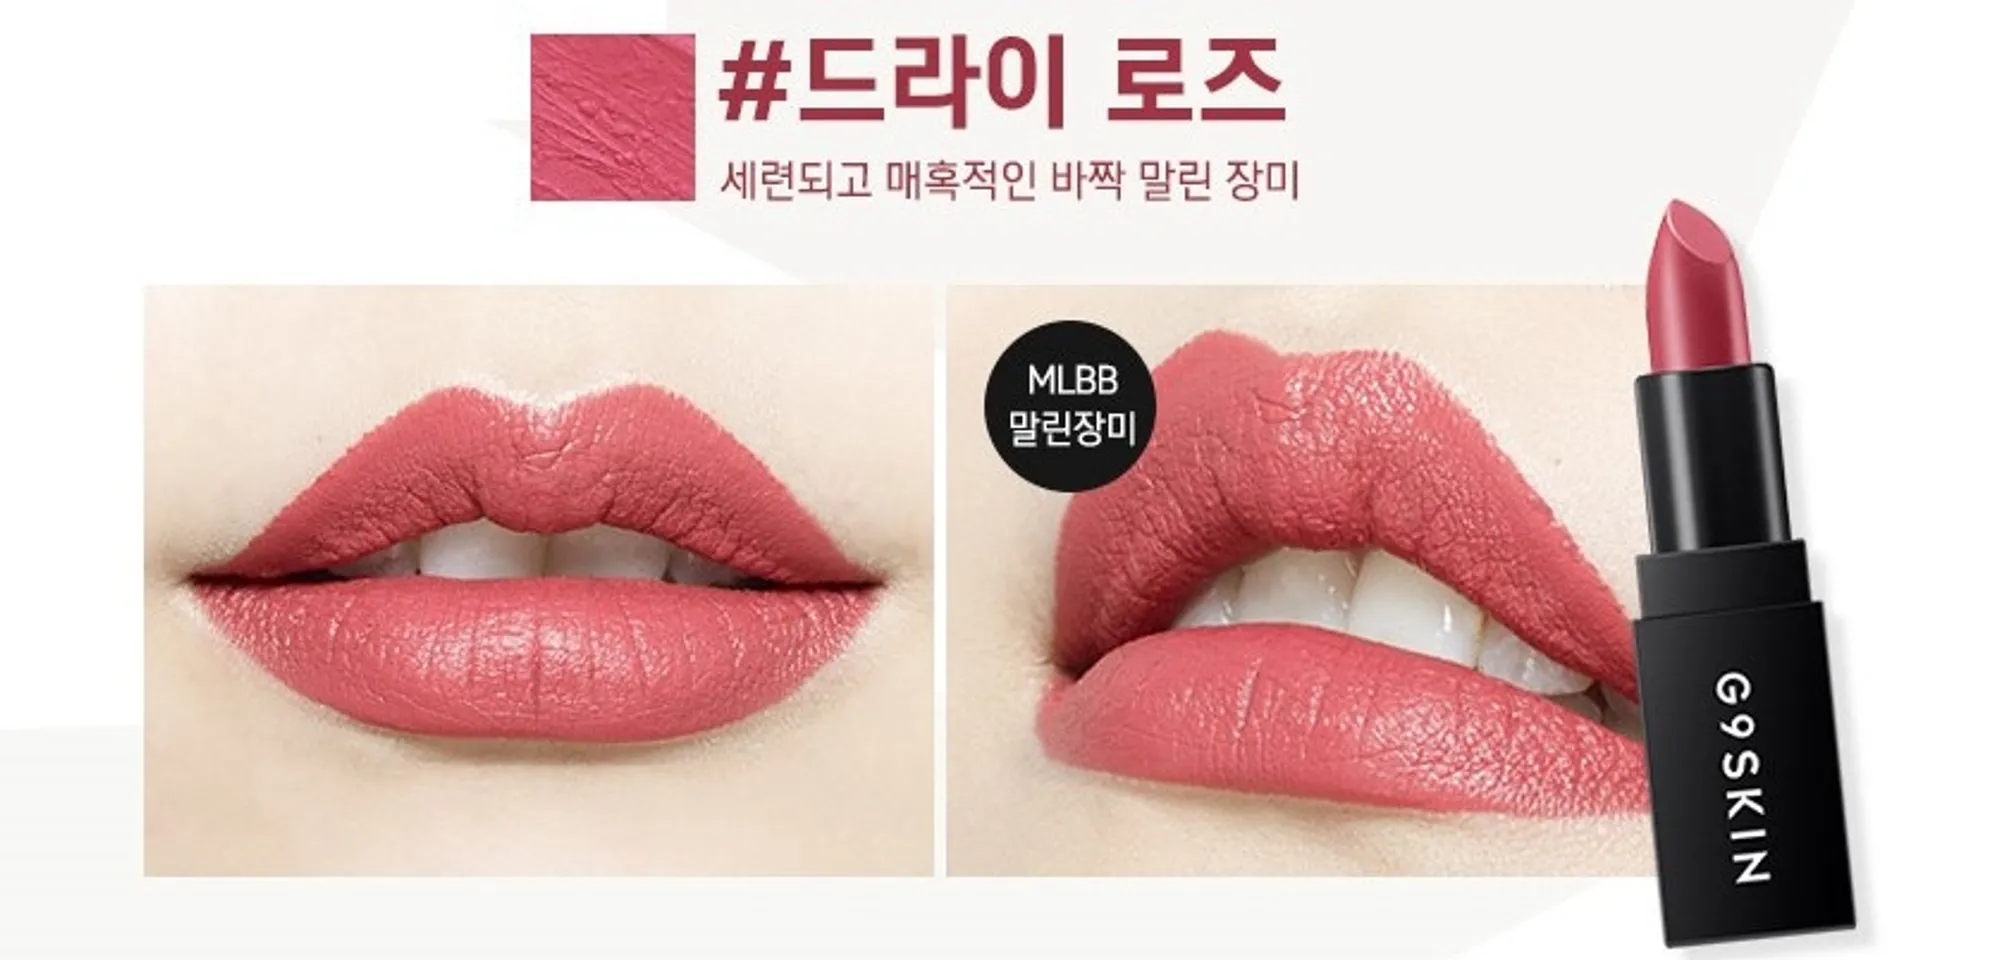 Son thỏi G9Skin First Lipstick 5 màu thời trang siêu hot 3